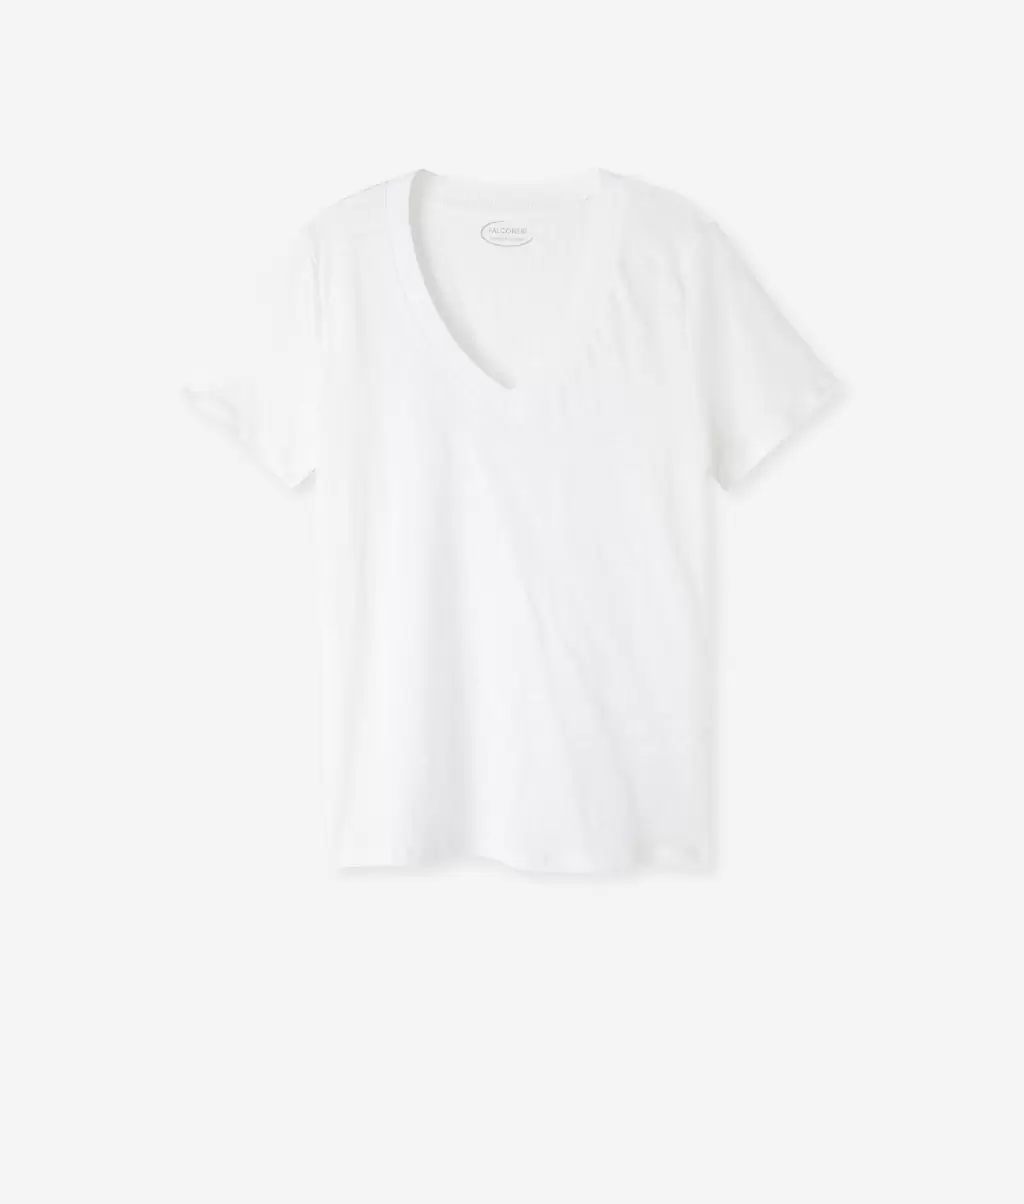 Kobieta Topy I T-Shirty Lniany T-Shirt Z Dekoltem W Serek I Dzianinowym Obszyciem White Falconeri - 4